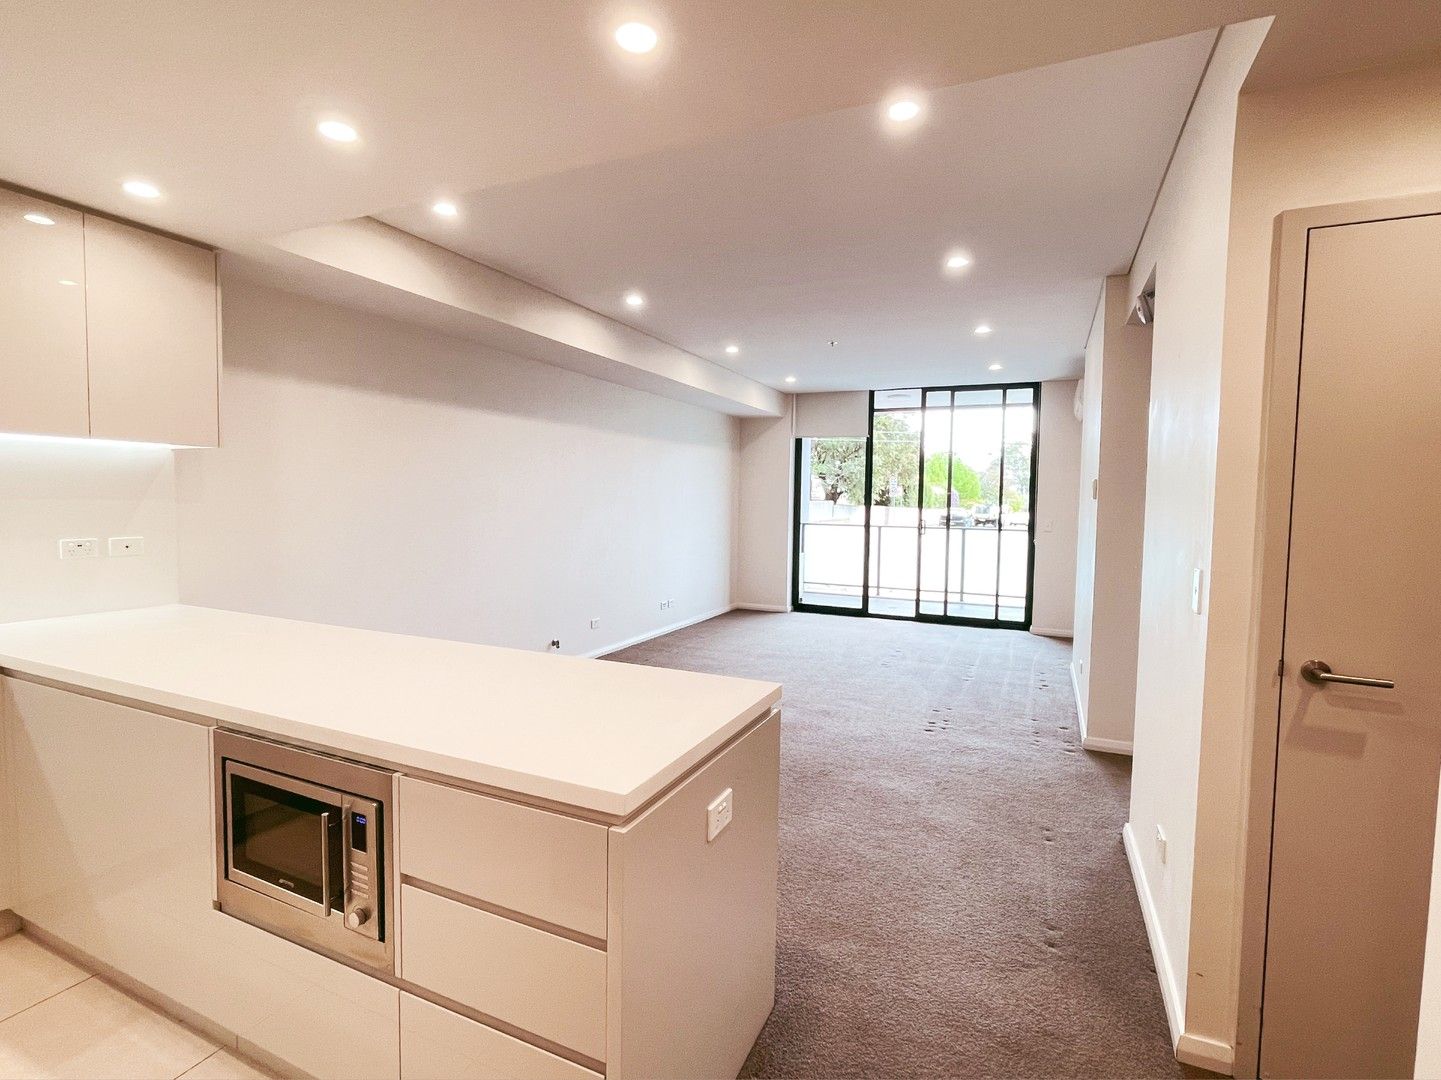 2 bedrooms Apartment / Unit / Flat in G01/14 Woniora Road HURSTVILLE NSW, 2220